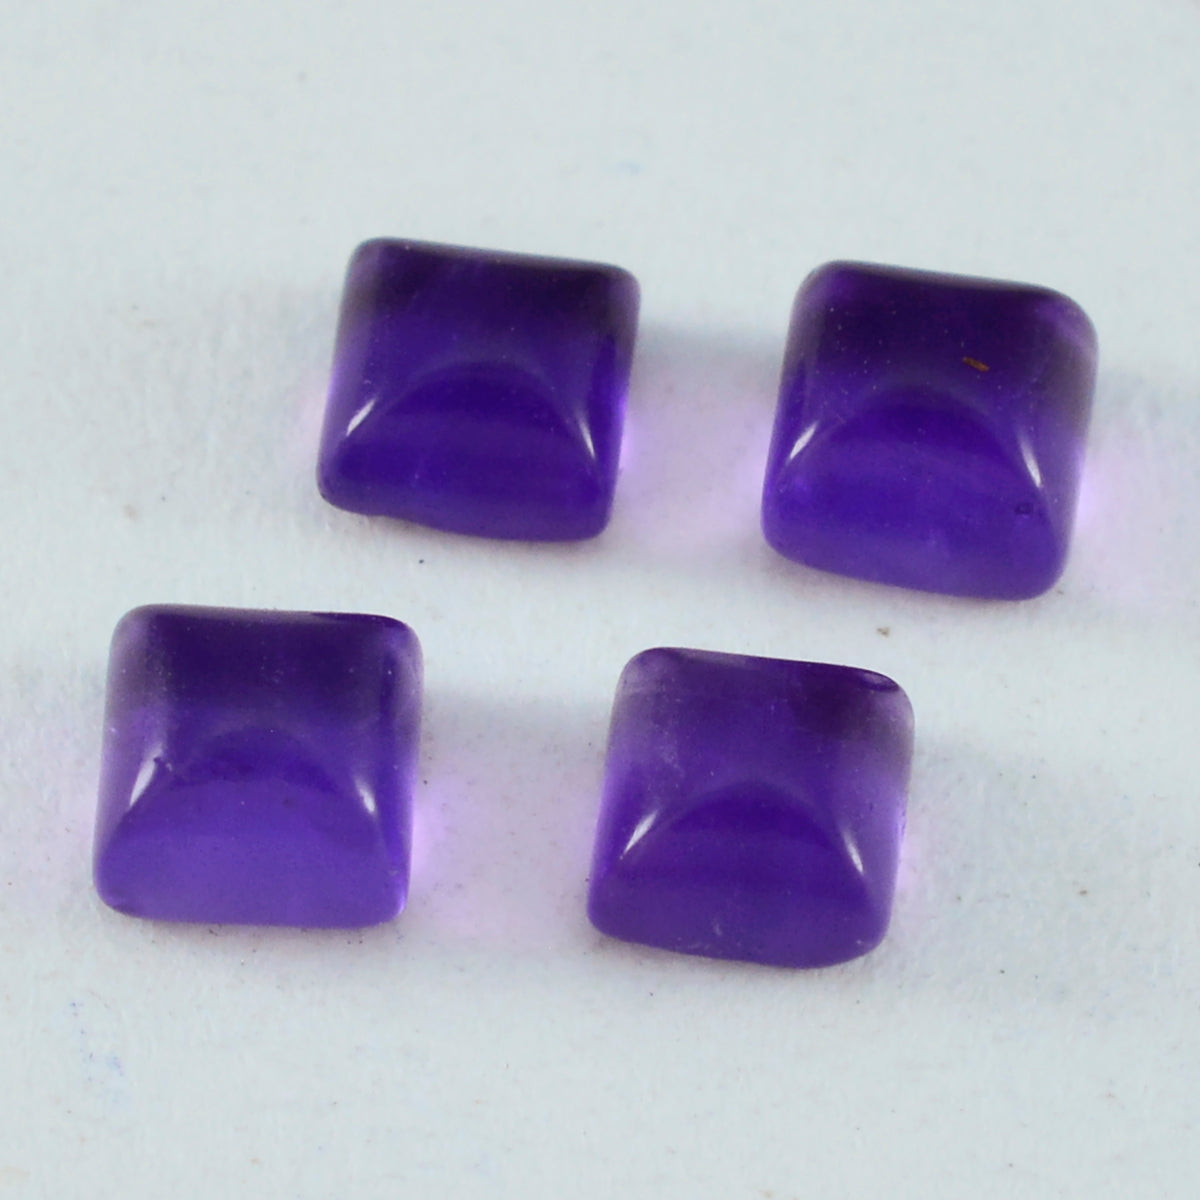 riyogems 1 шт. фиолетовый аметист кабошон 6x6 мм квадратной формы красивые качественные драгоценные камни